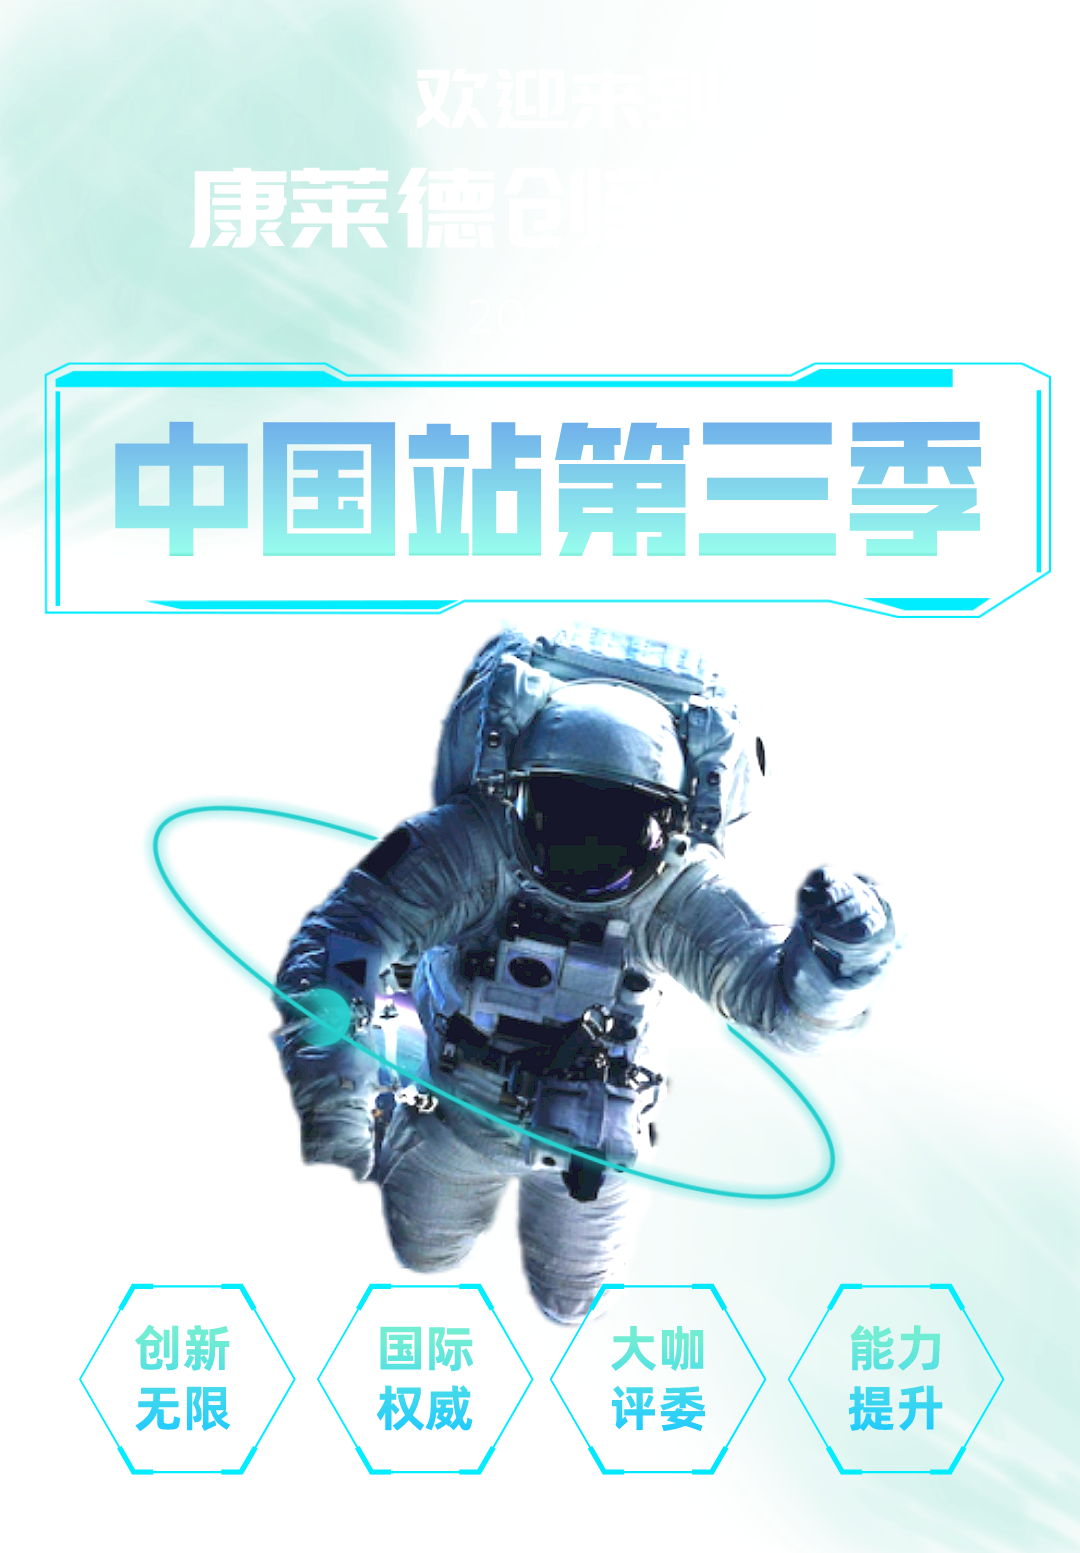 再创新生 | 2022康莱德创新挑战·中国站第三季开启报名！